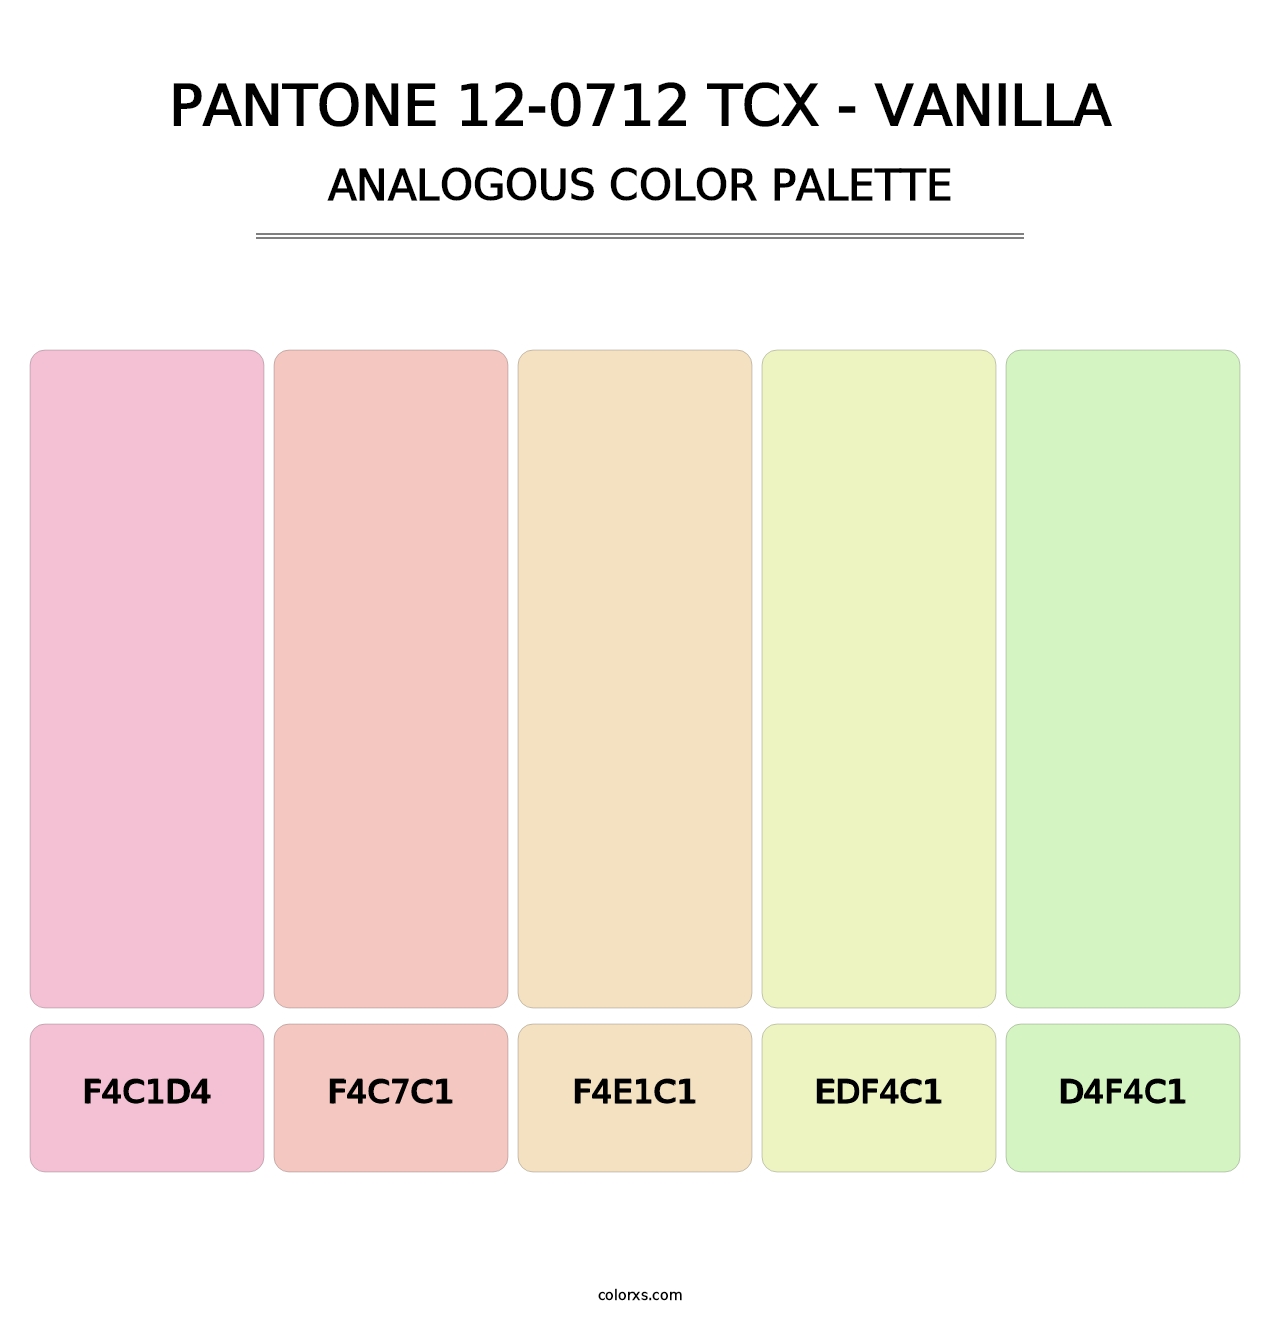 PANTONE 12-0712 TCX - Vanilla - Analogous Color Palette